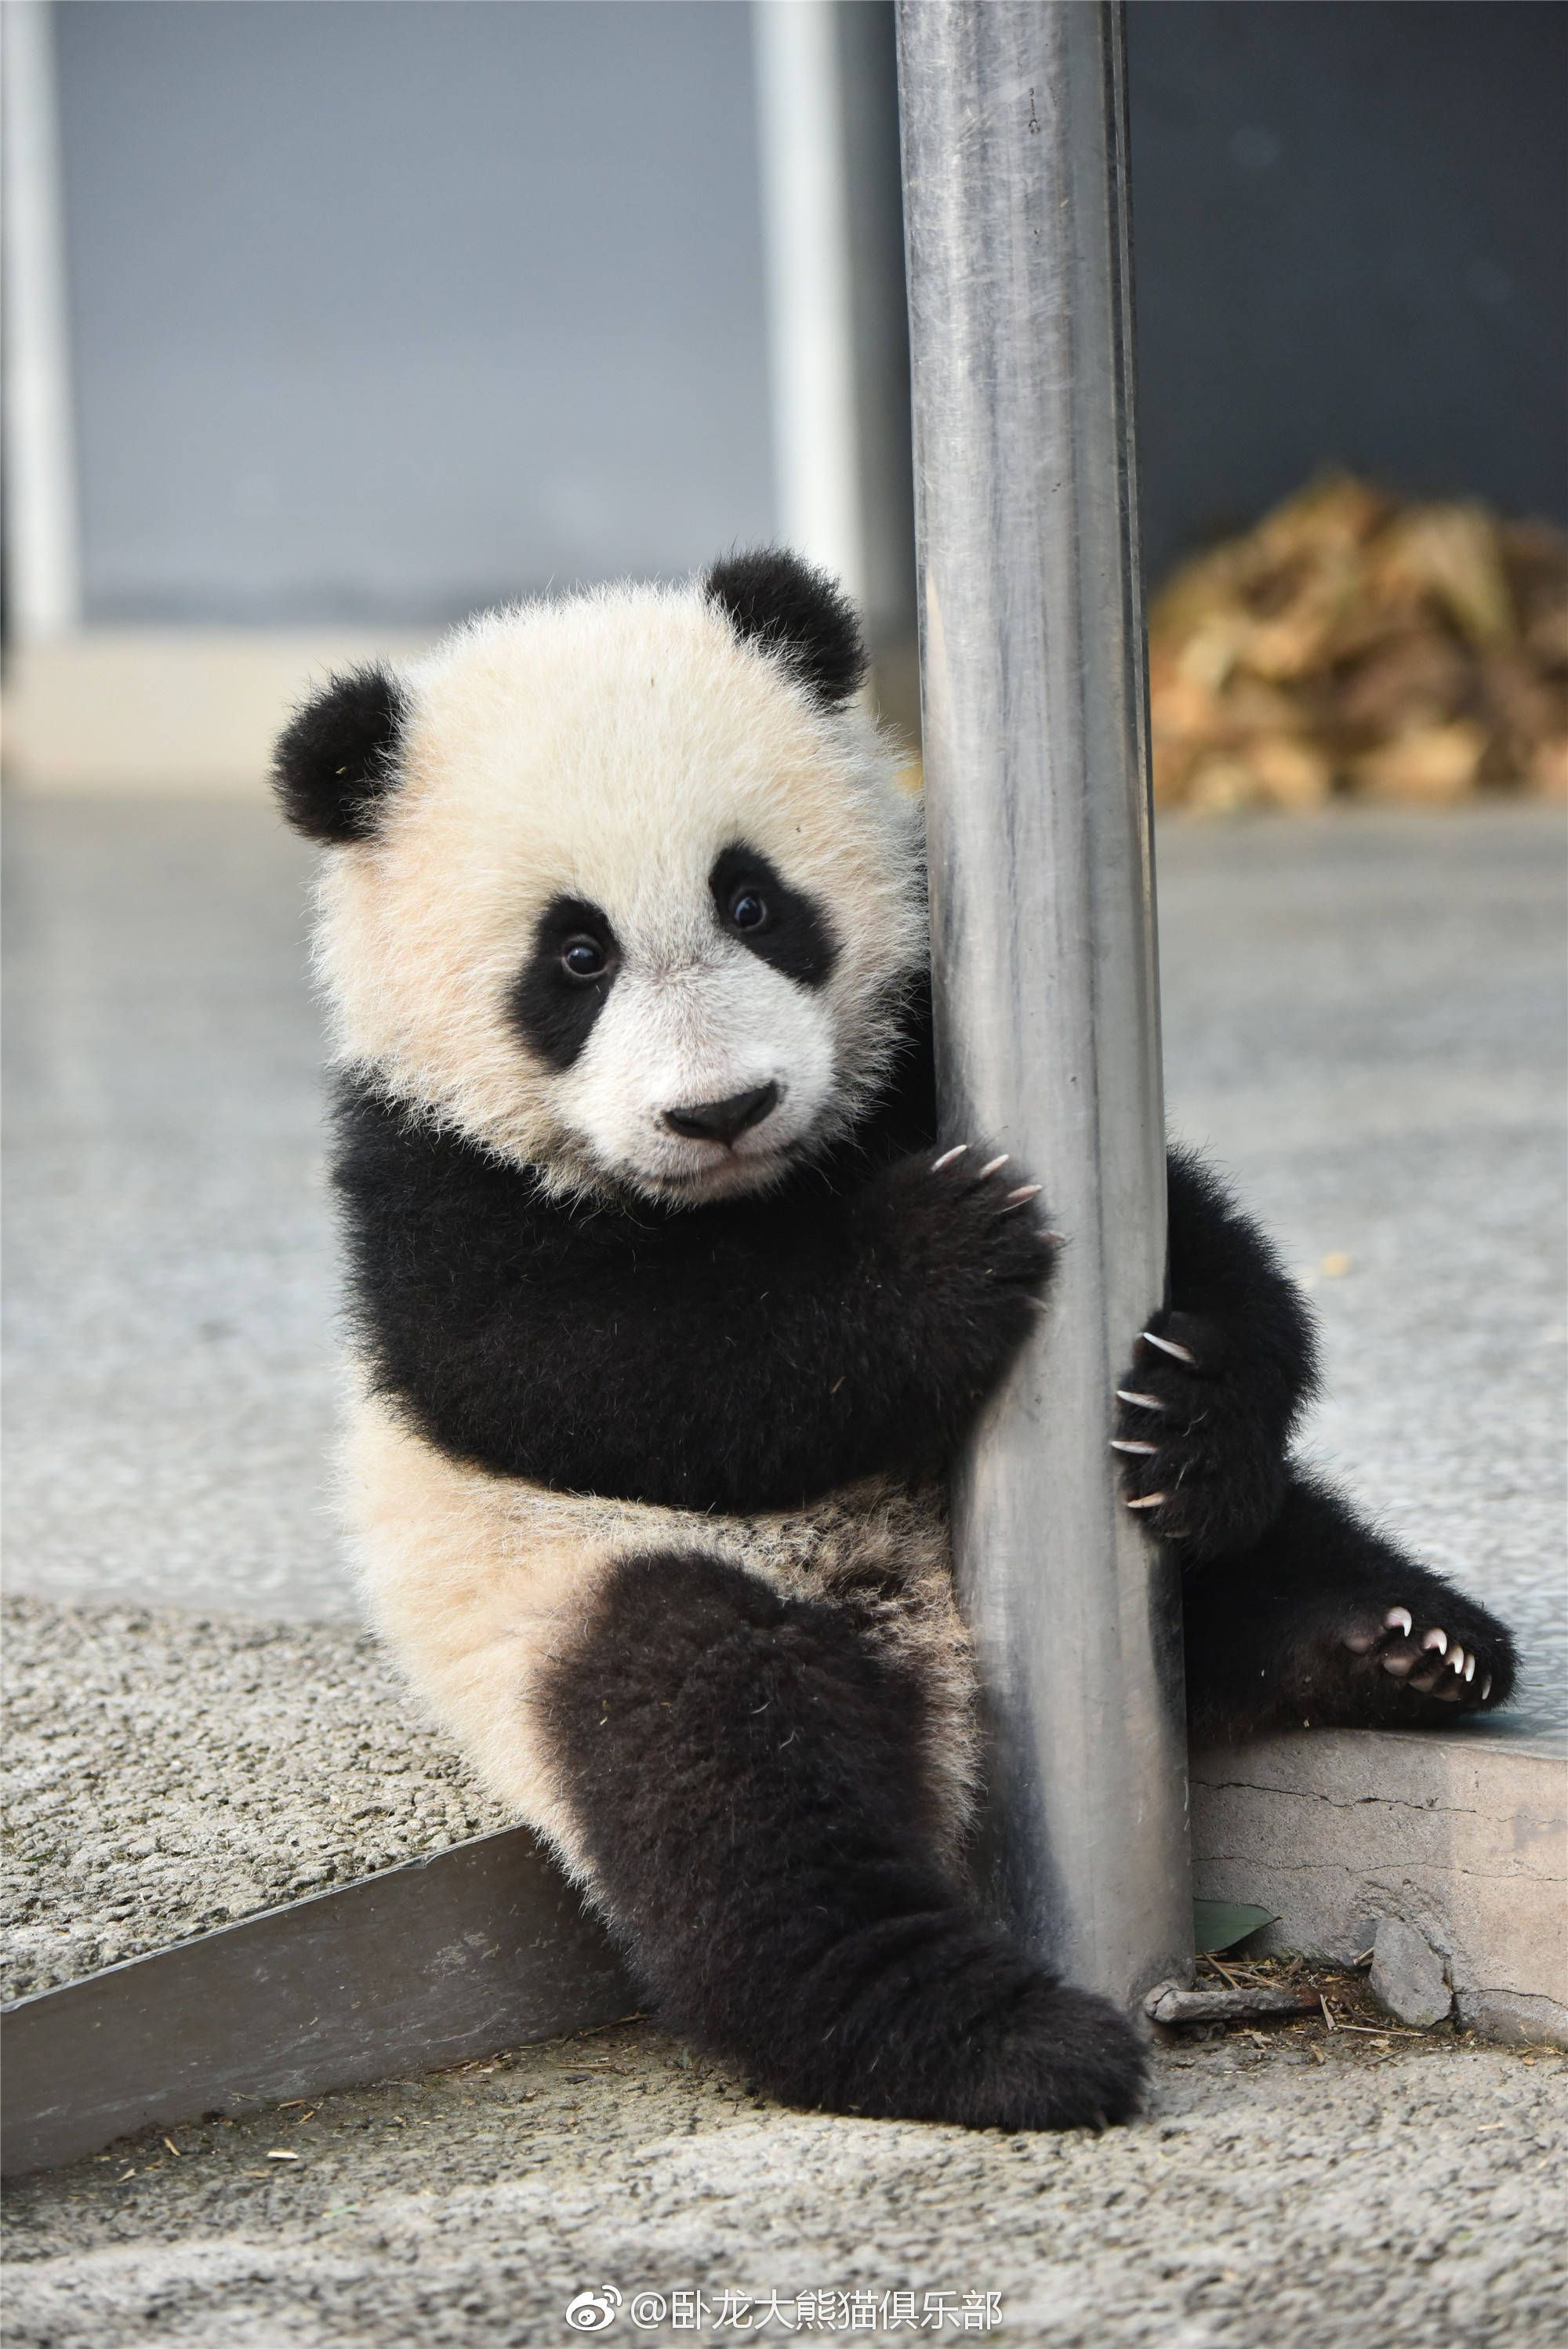 Panda | Cute | Cute Panda